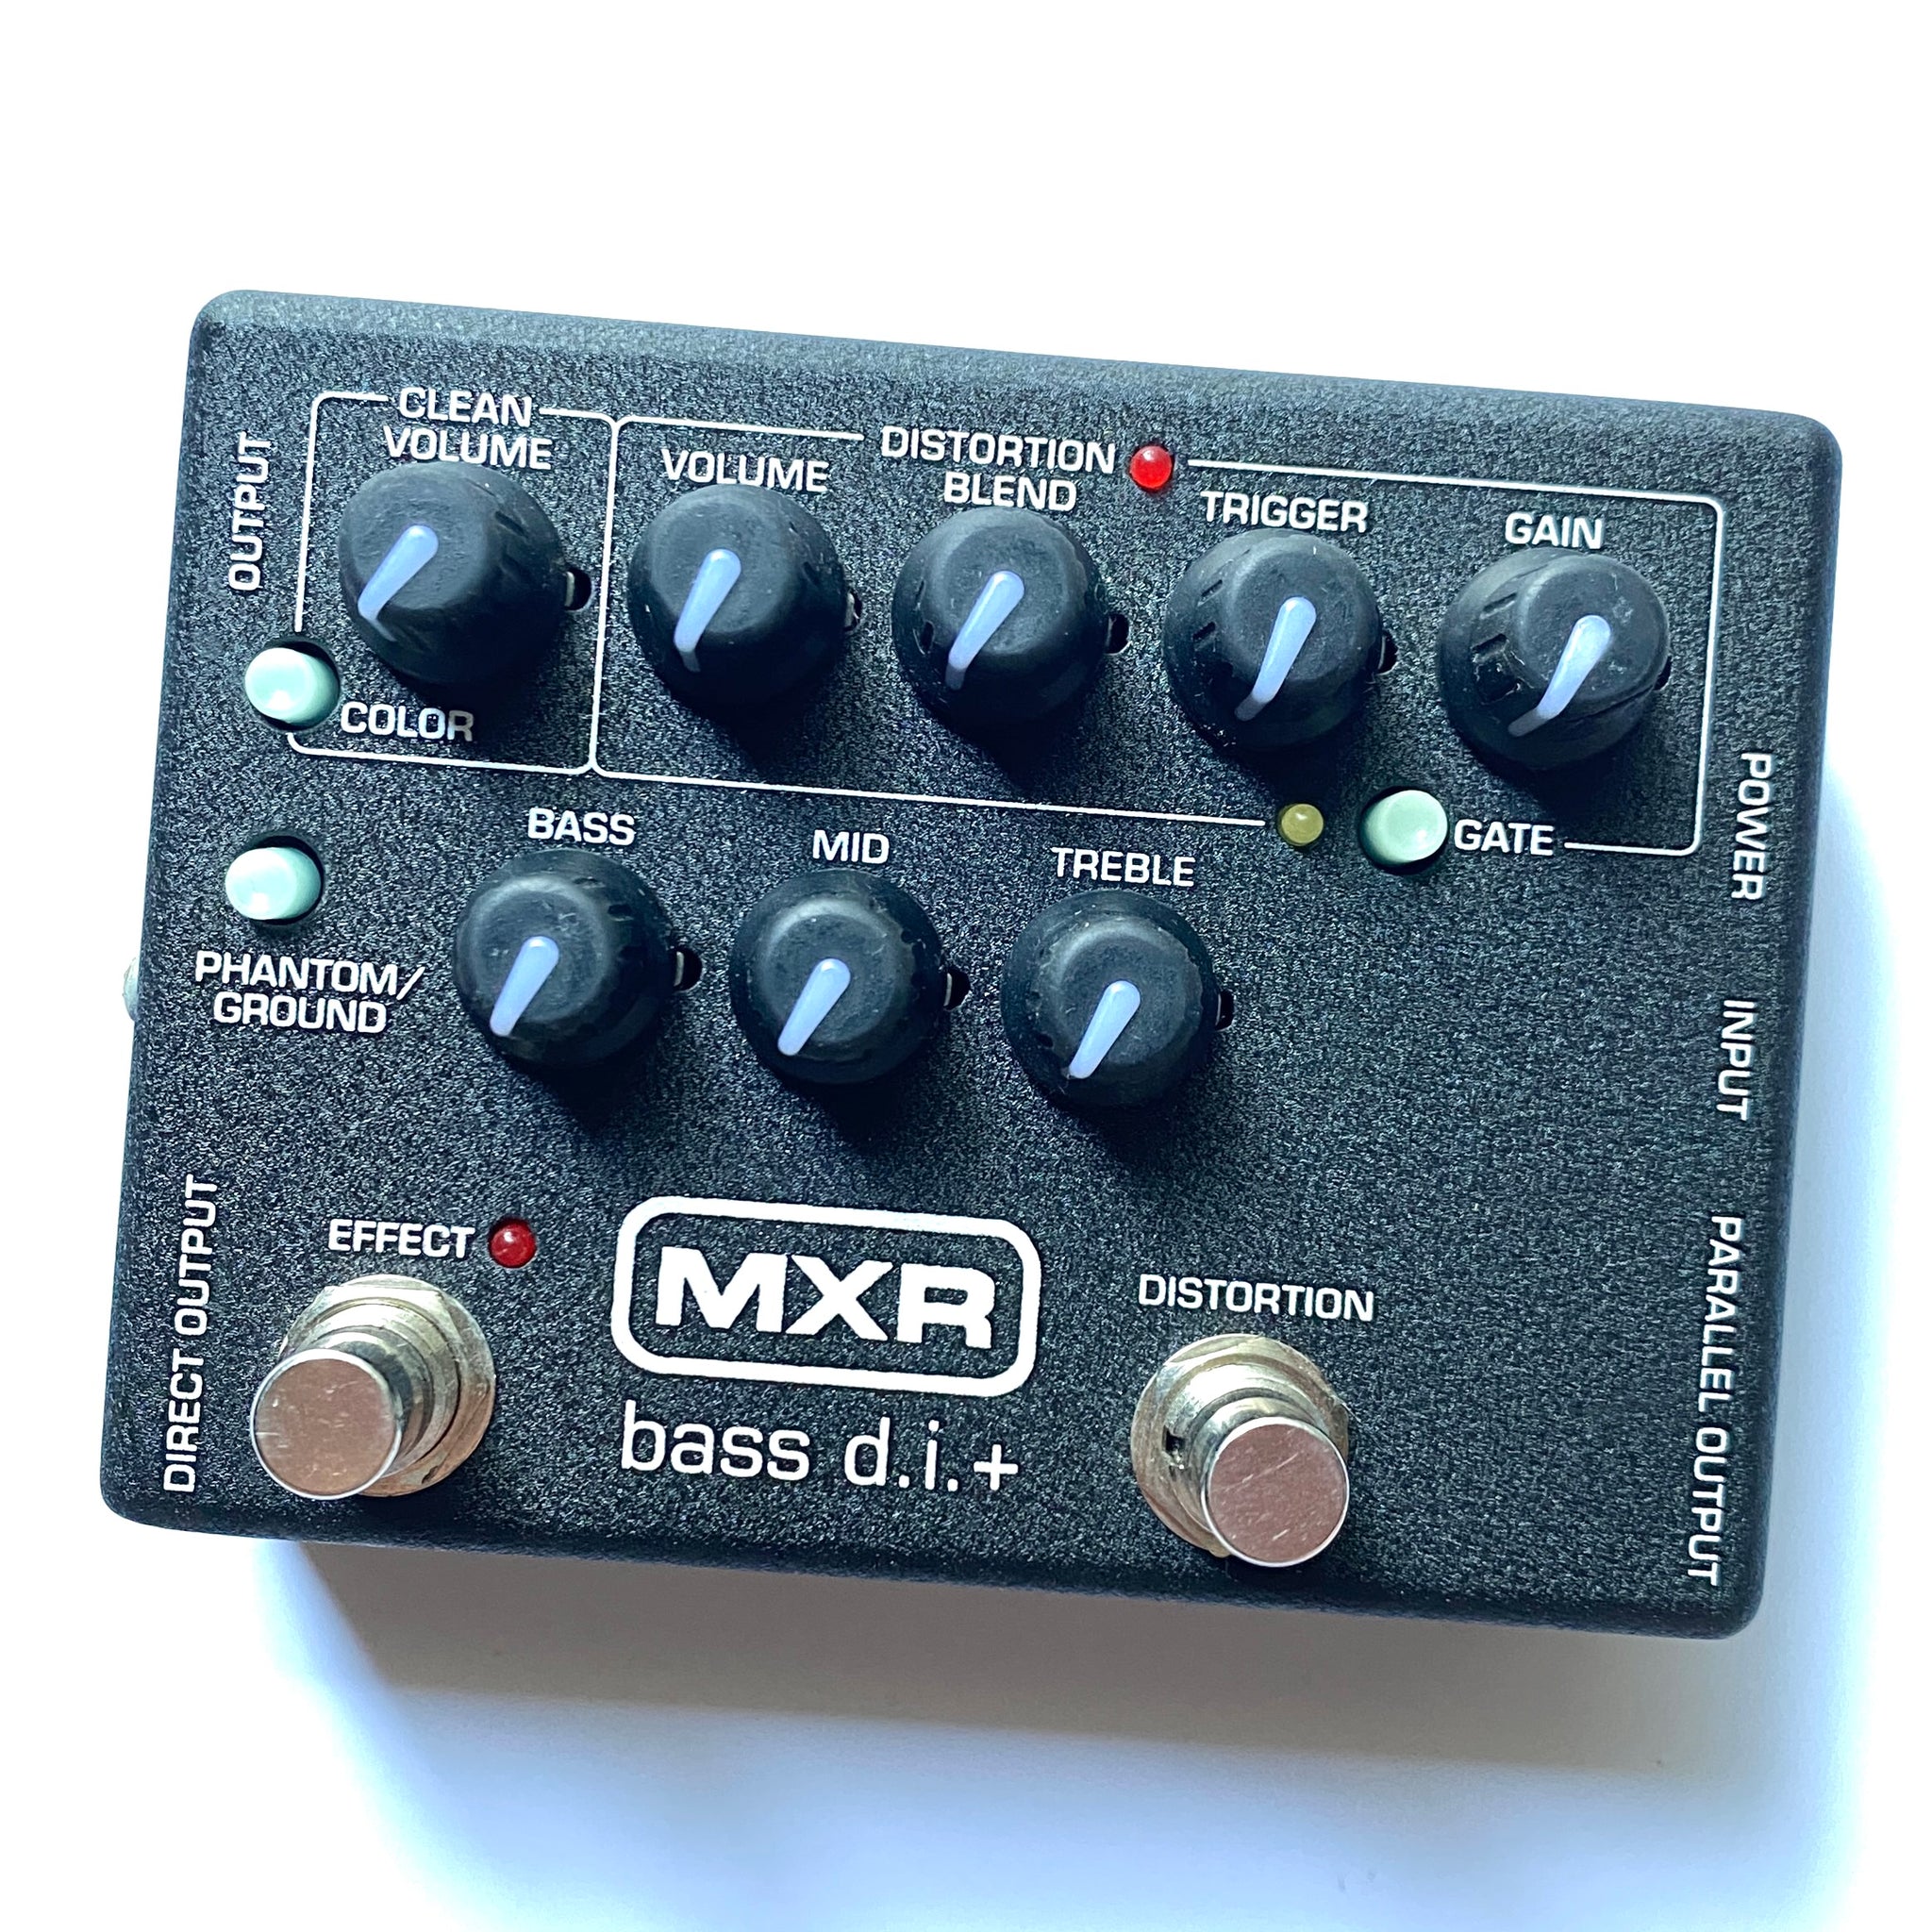 M80 Bass D.I.+